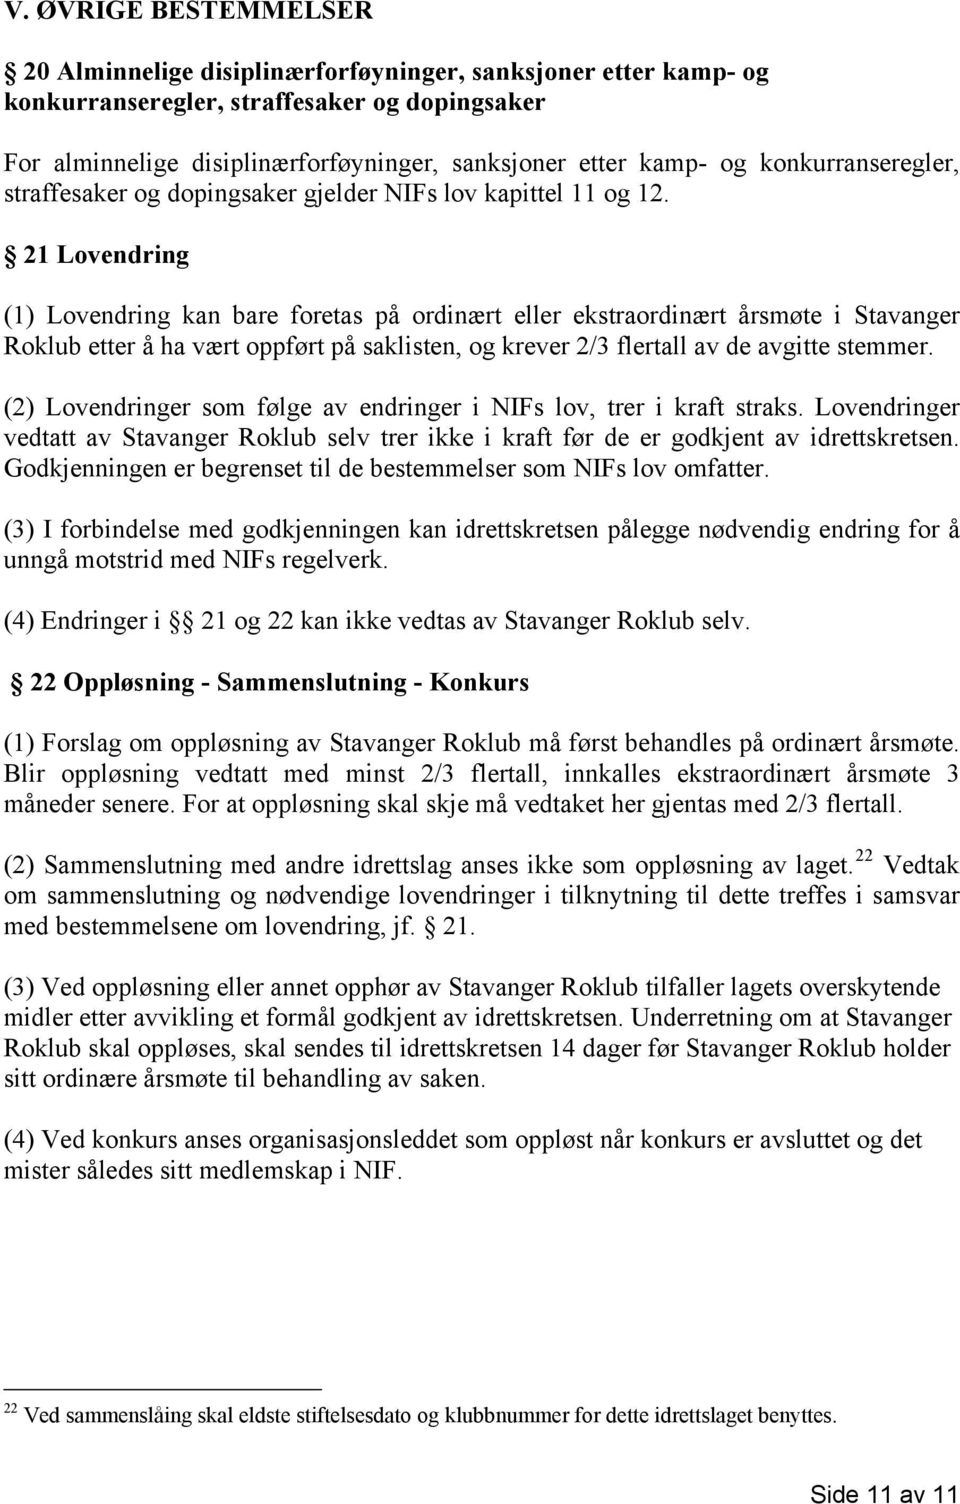 21 Lovendring (1) Lovendring kan bare foretas på ordinært eller ekstraordinært årsmøte i Stavanger Roklub etter å ha vært oppført på saklisten, og krever 2/3 flertall av de avgitte stemmer.